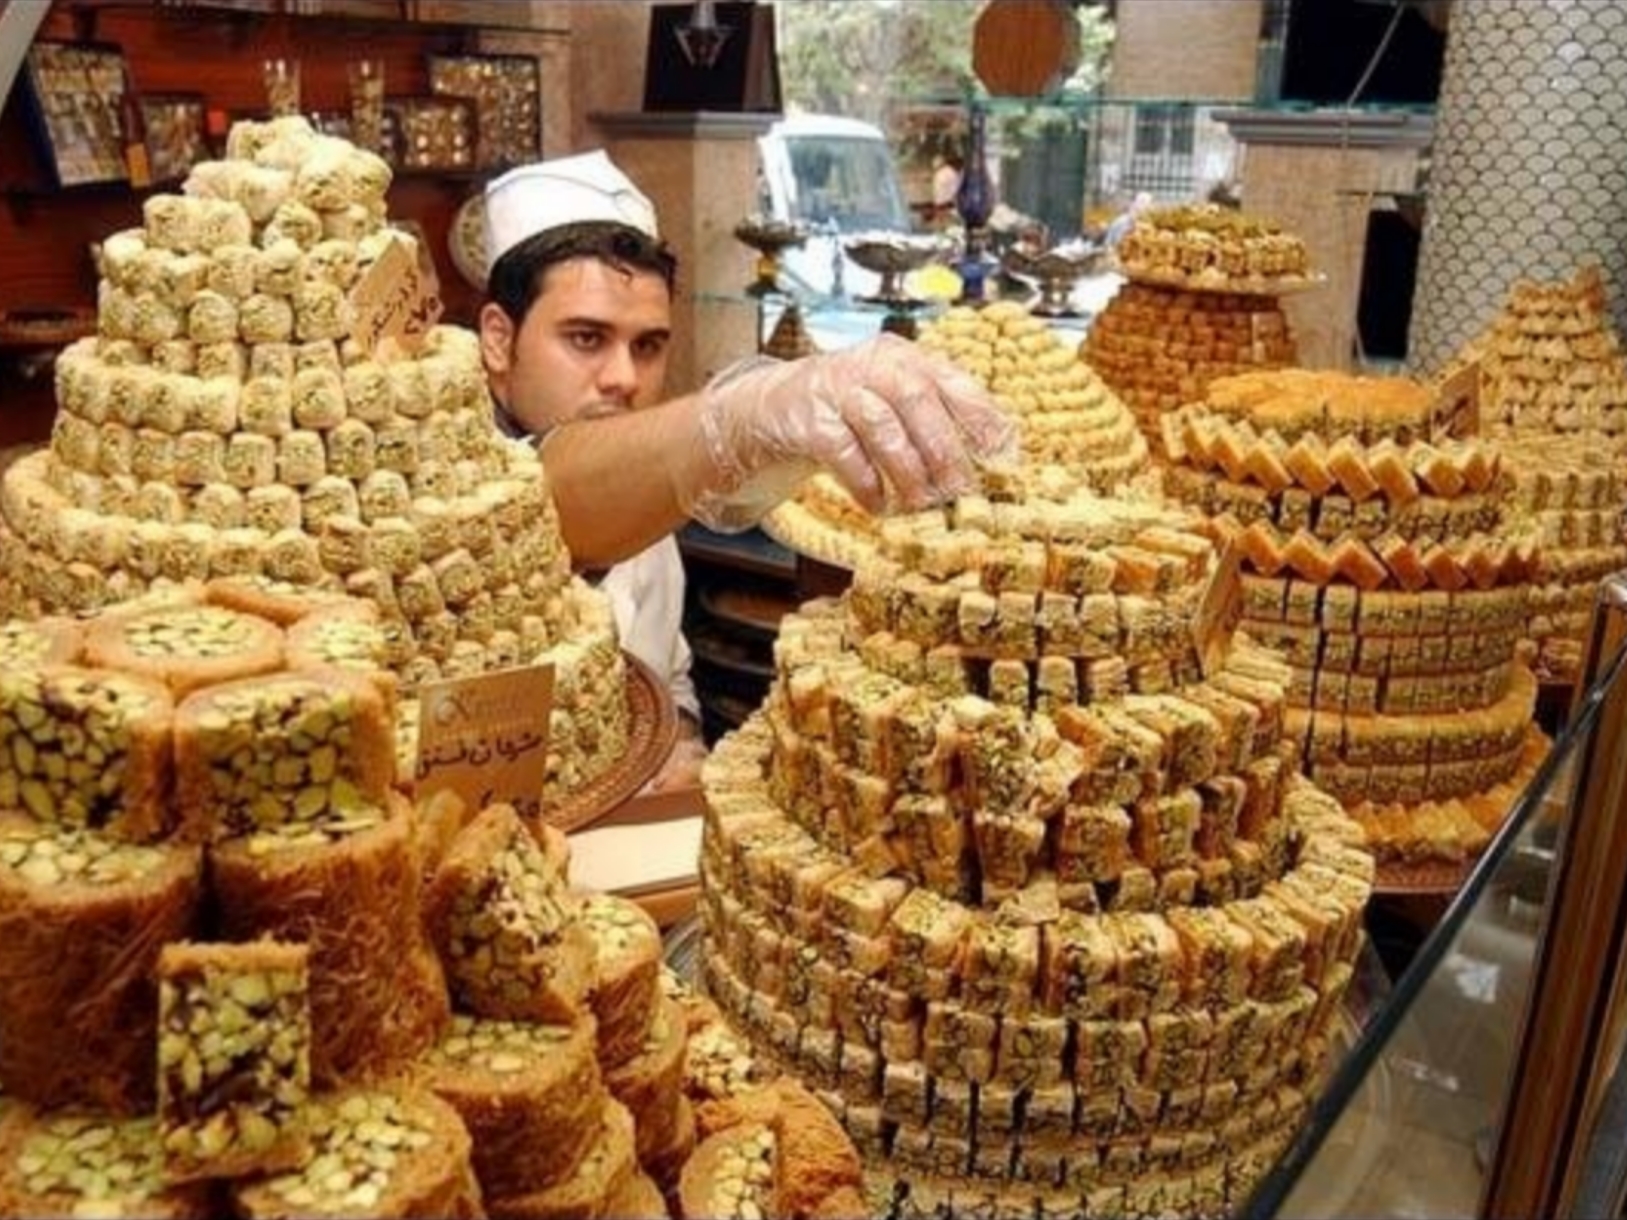 عيد الفطر بين الفرح والتحديات. الأسعار تحرم اللاجئين الفلسطينيين من حلويات العيد